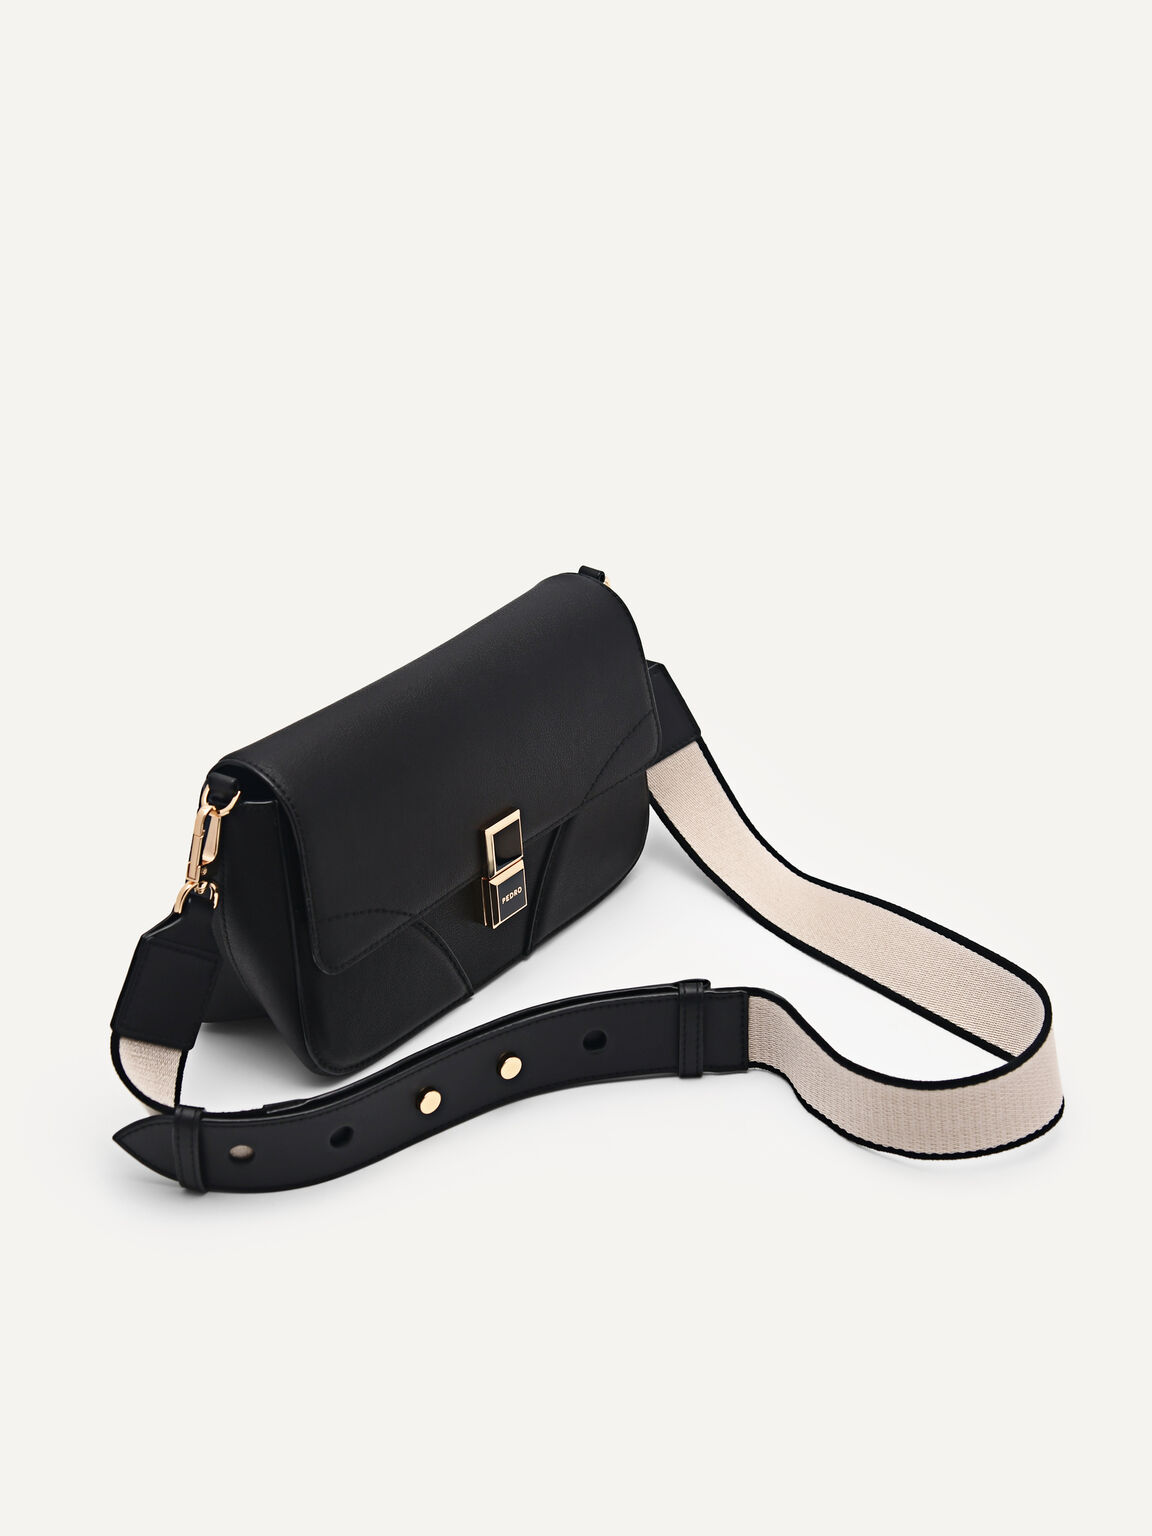 Bianca Leather Shoulder Bag, Black